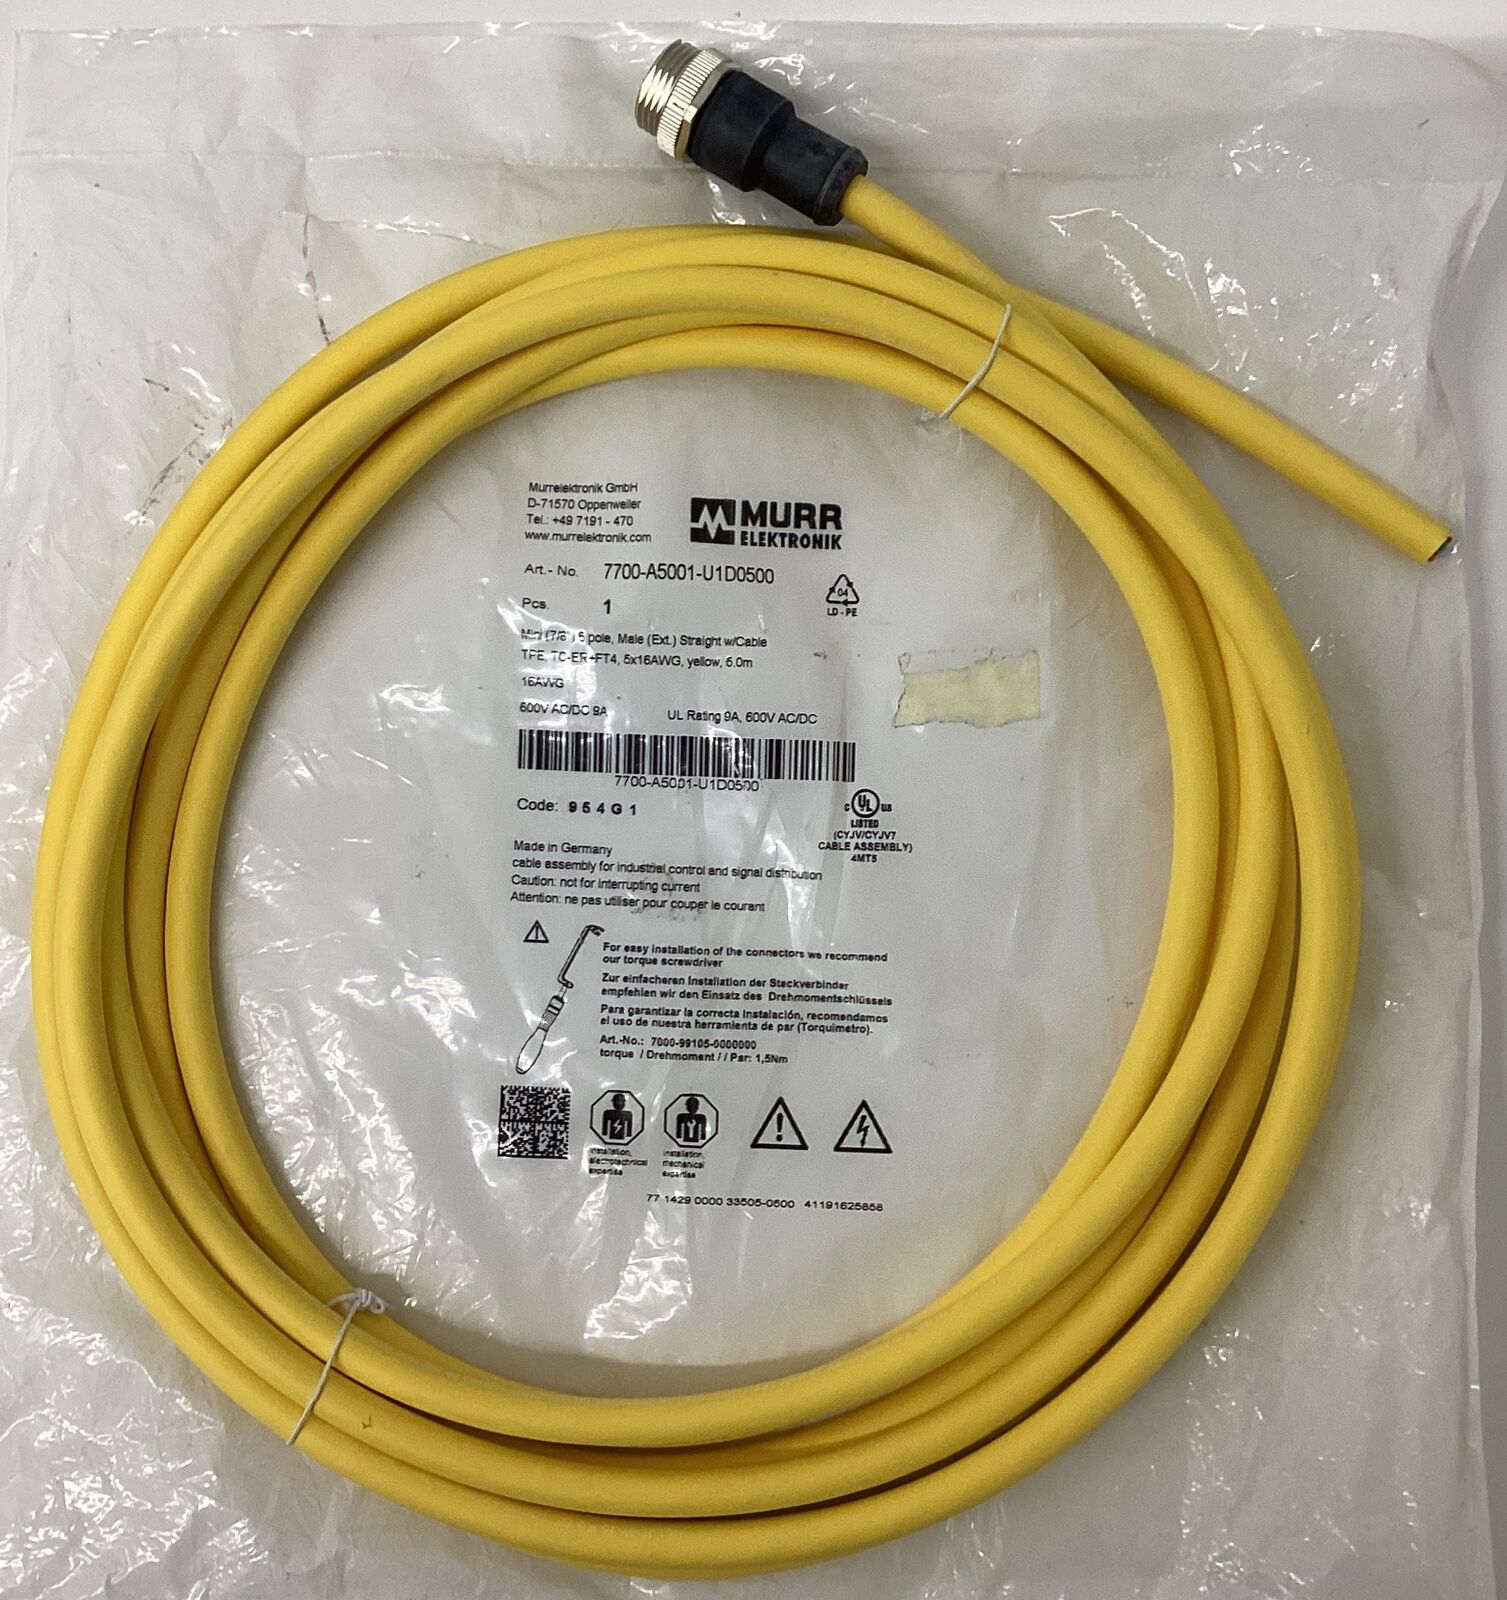 Murr 7700-A5001-U1D0500 Mini 7/8'' 5-Pole, Male Cable 5 Meter (CBL141)